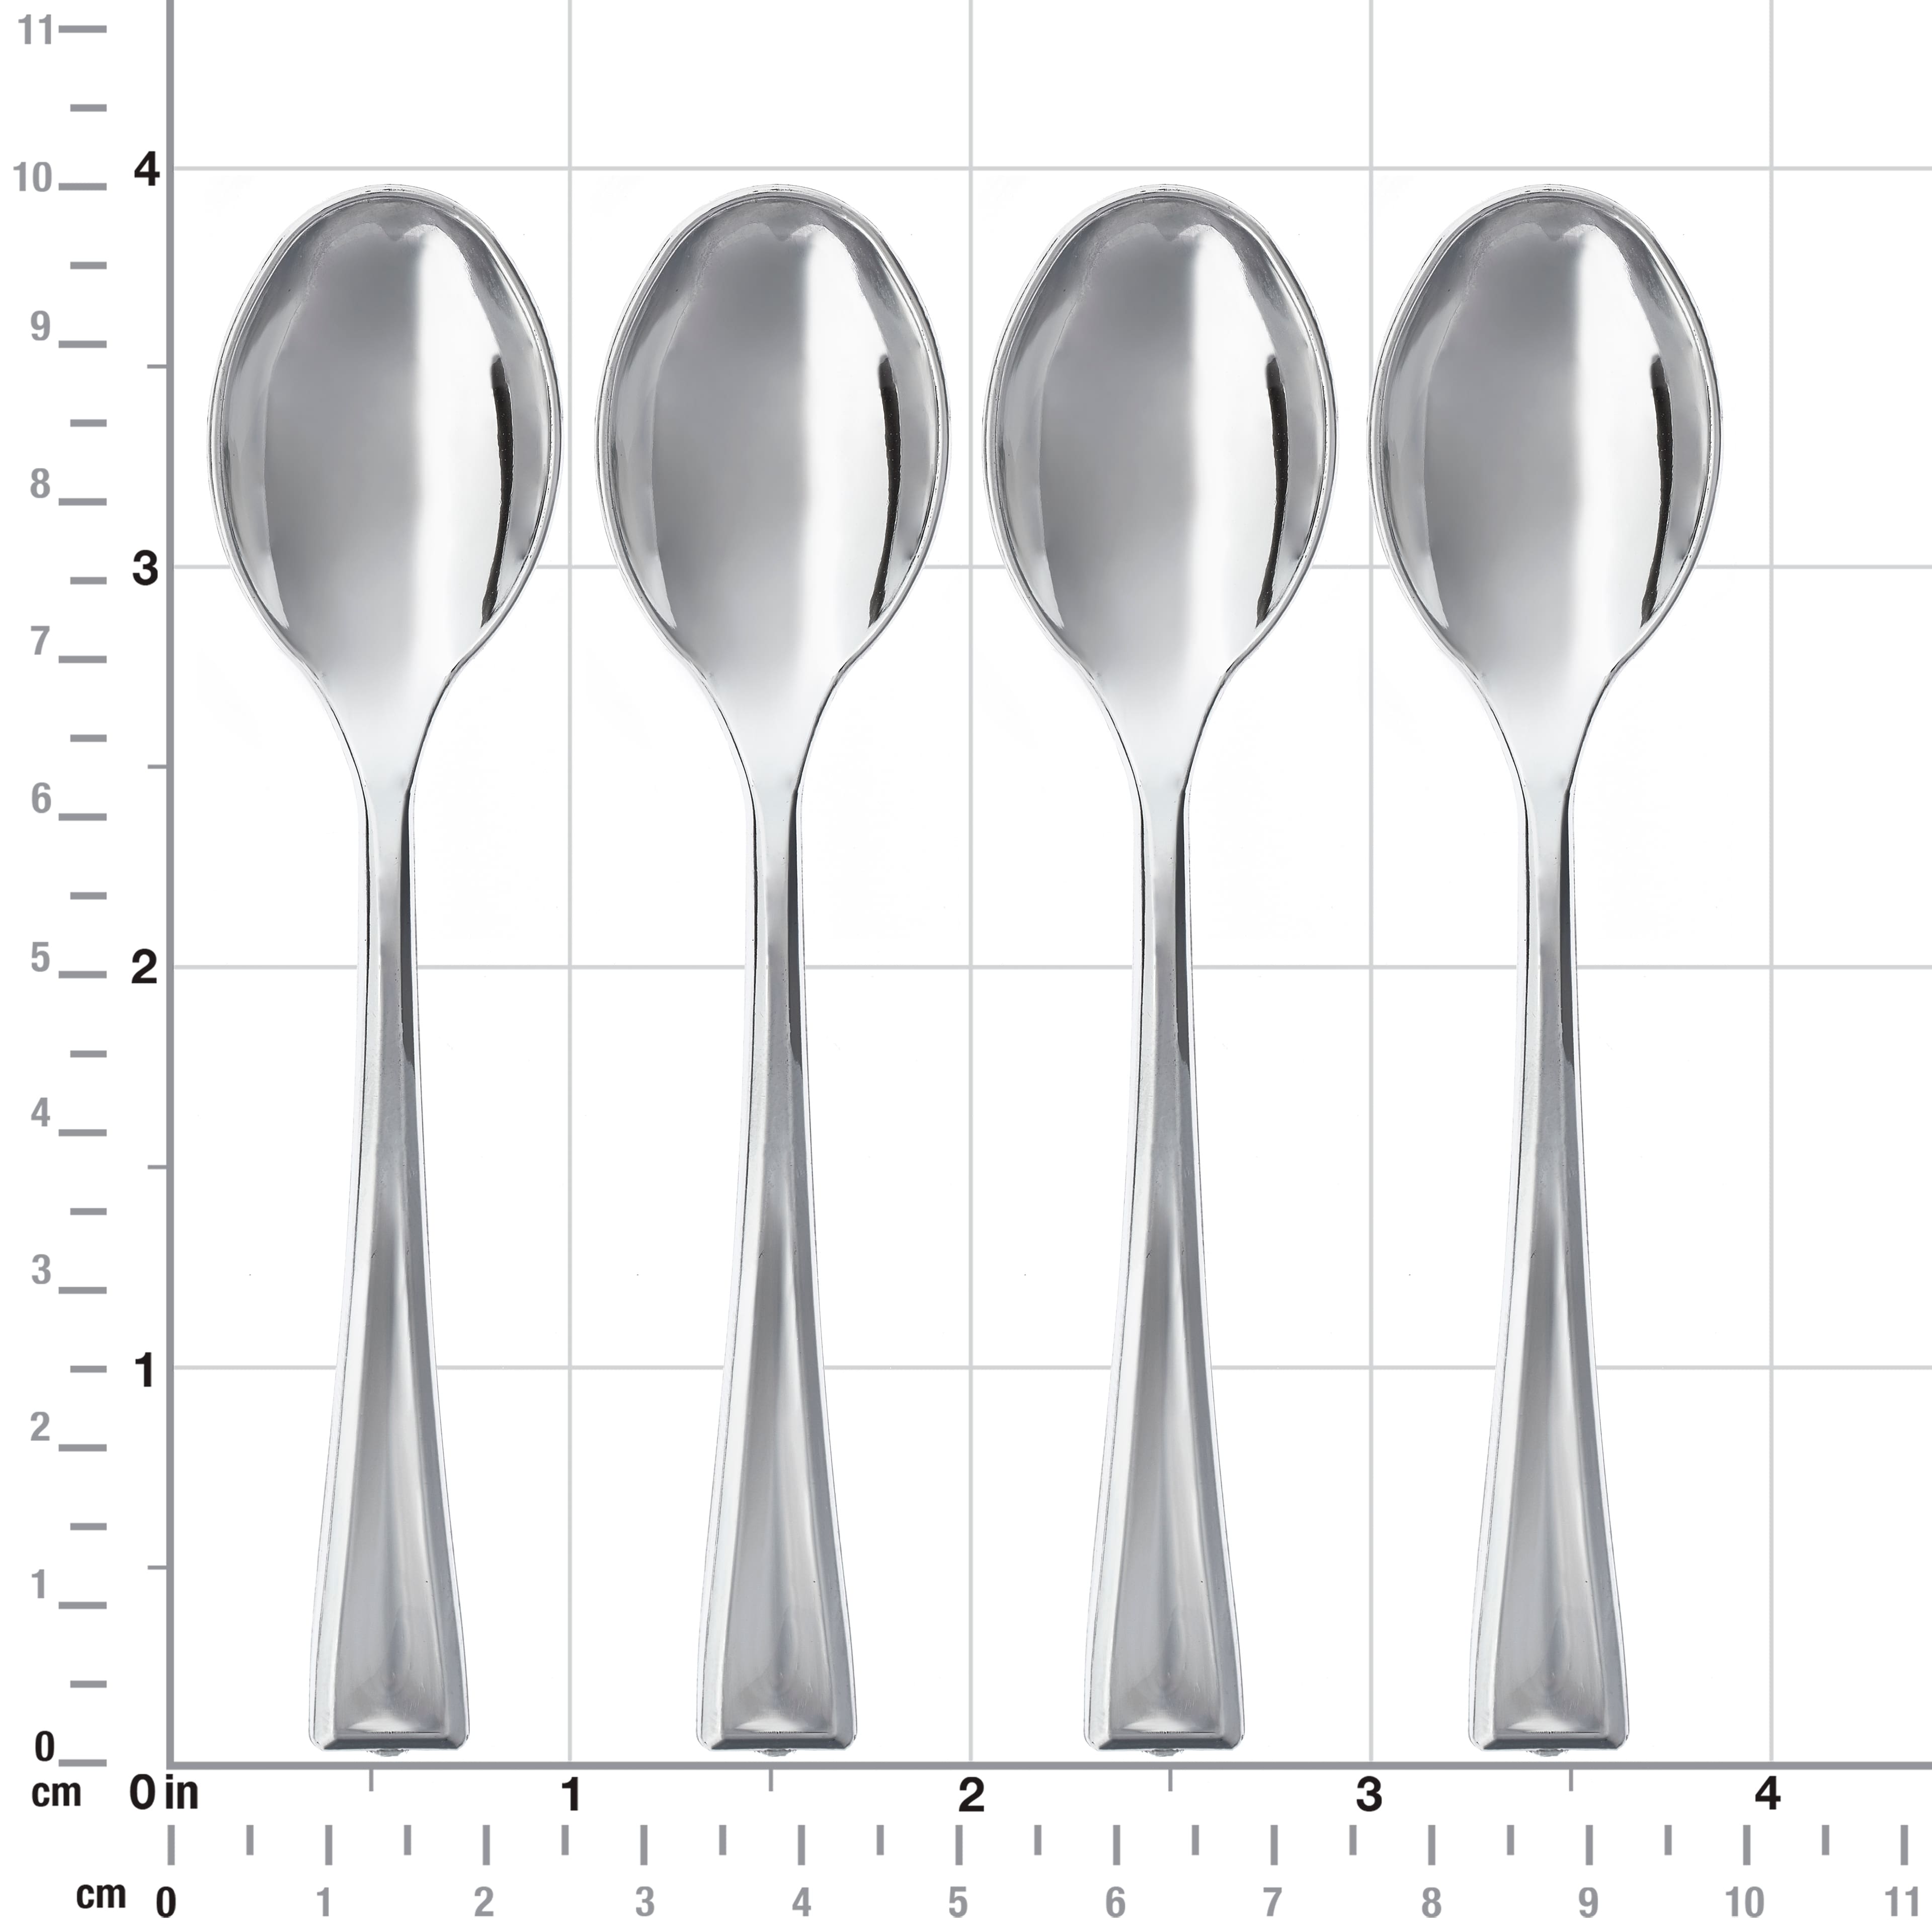 Mini Spoons 